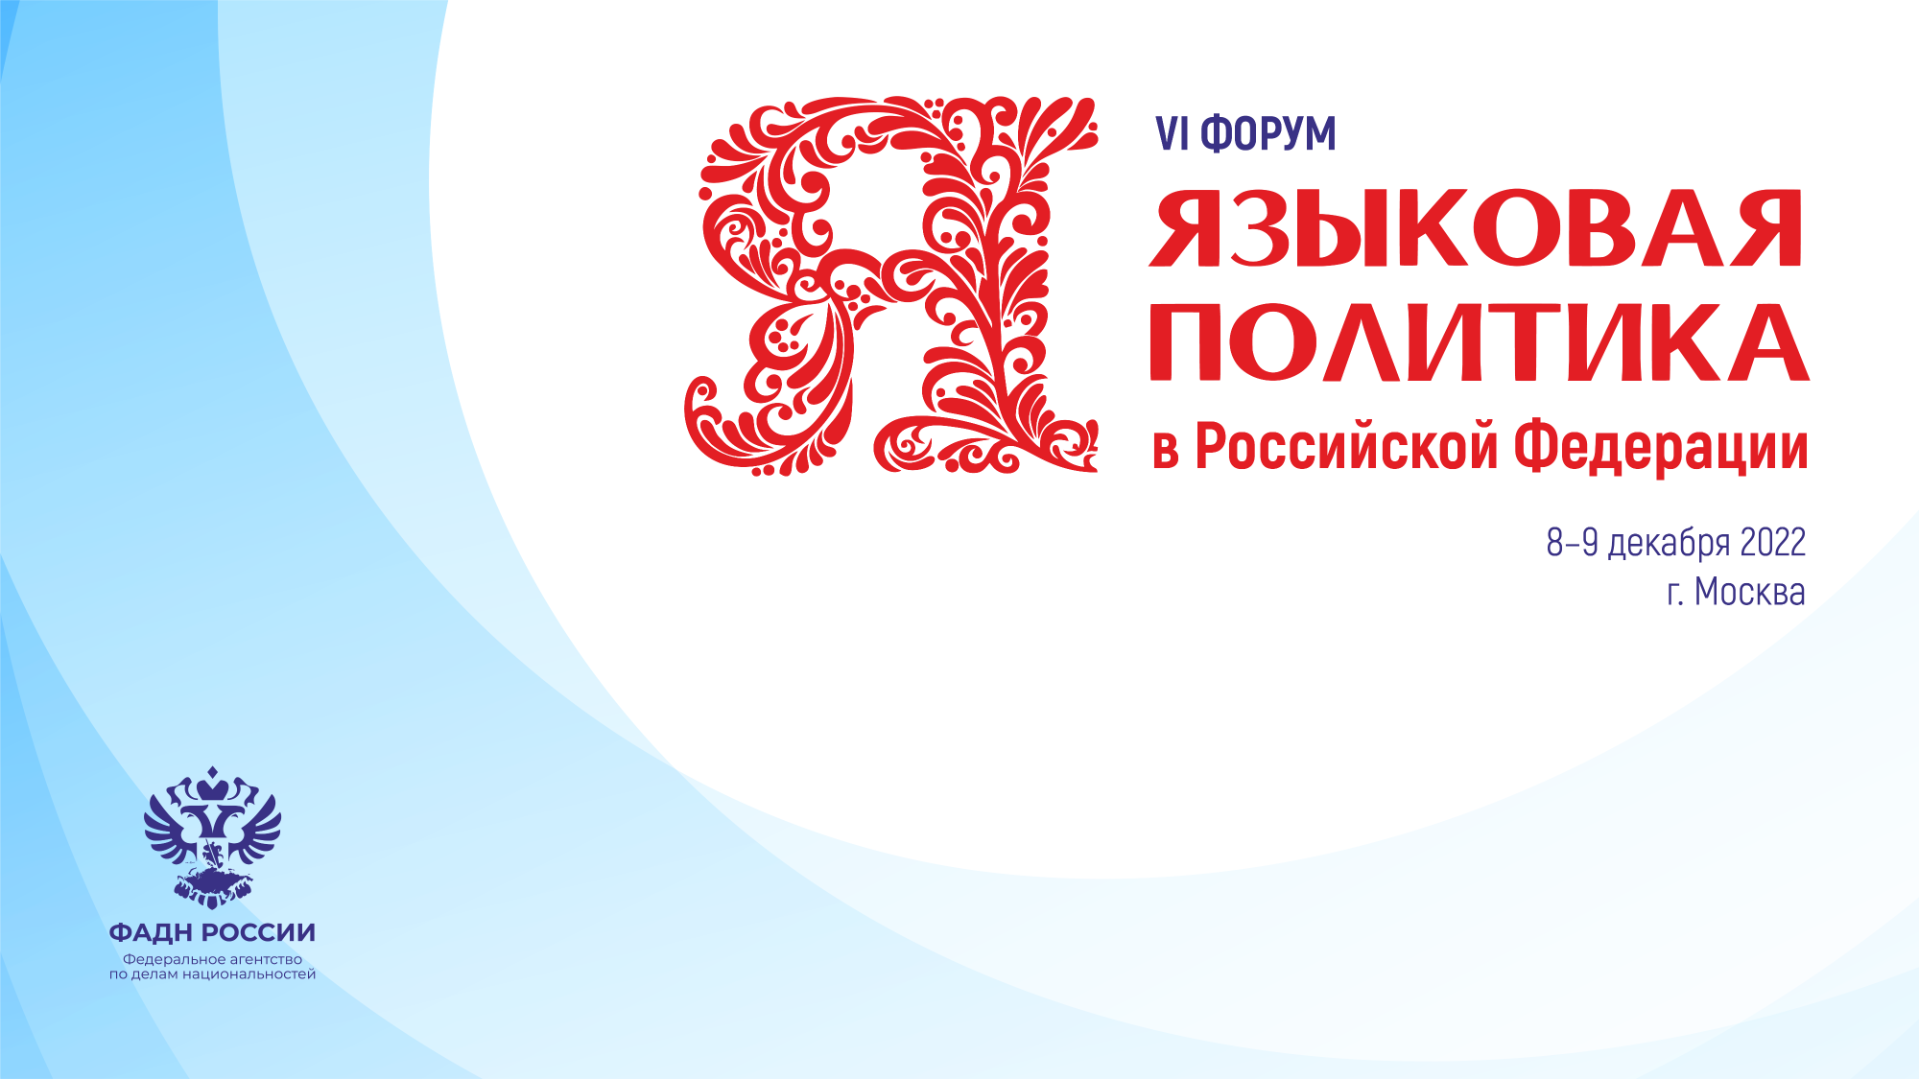 VI форум «Языковая политика в Российской Федерации» пройдет 8 – 9 декабря 2022 г. Москве